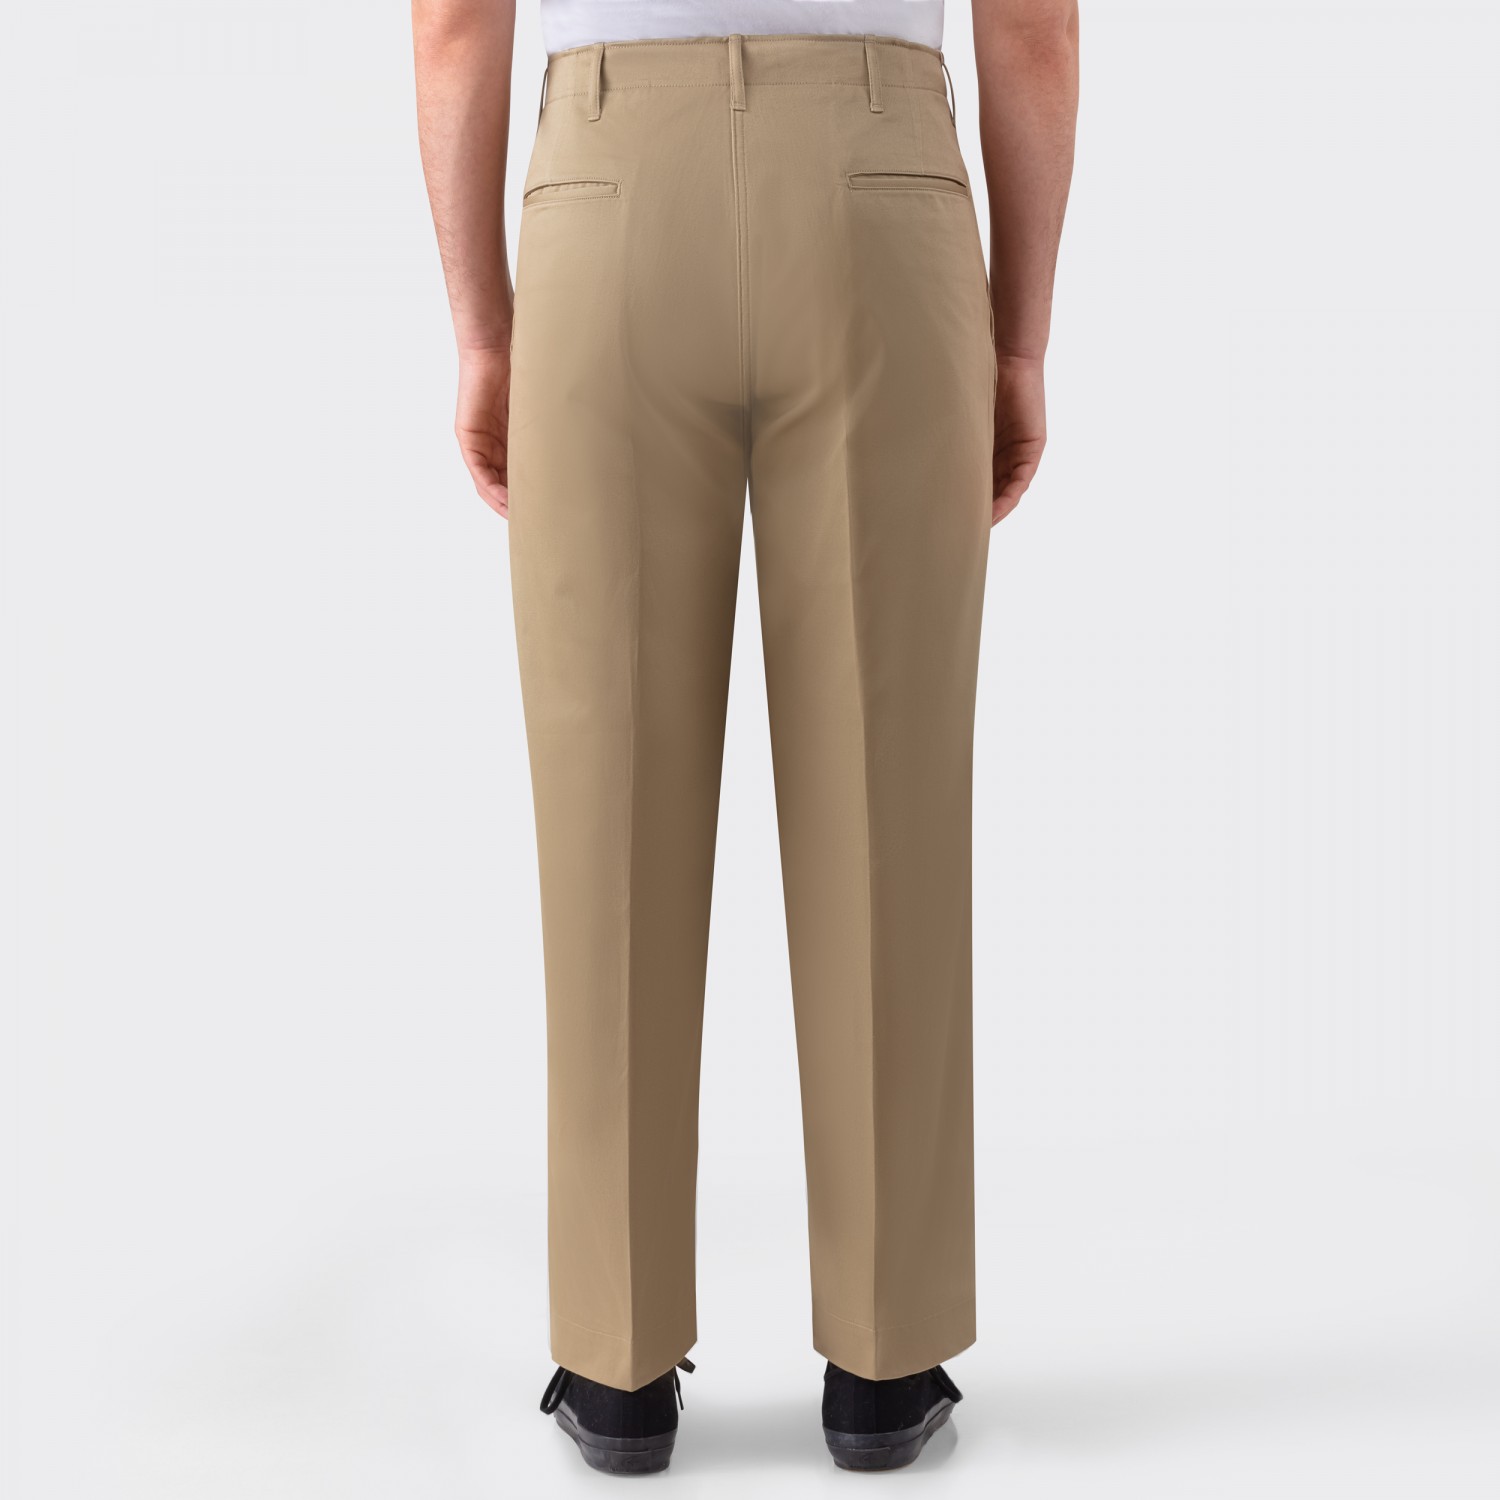 M1945 West Point Trousers : Khaki